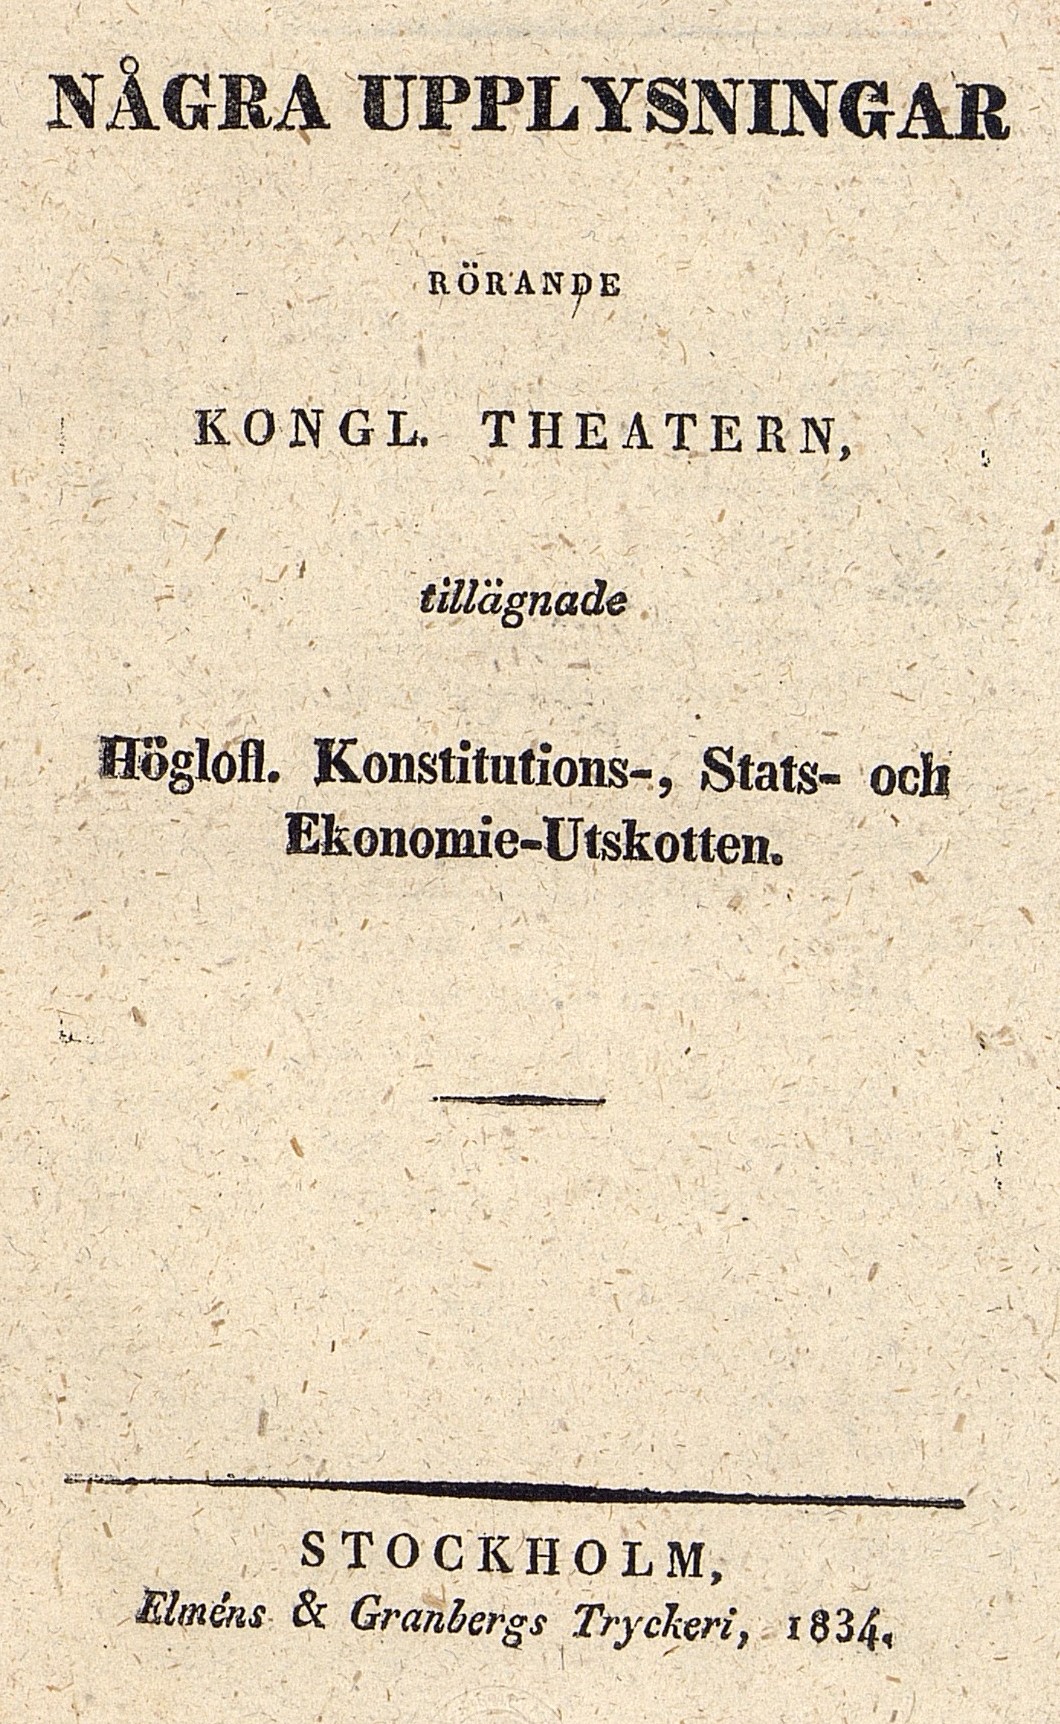 Titelsida till skrift. Text: Några upplysningar rörande Kongl. Theatern.